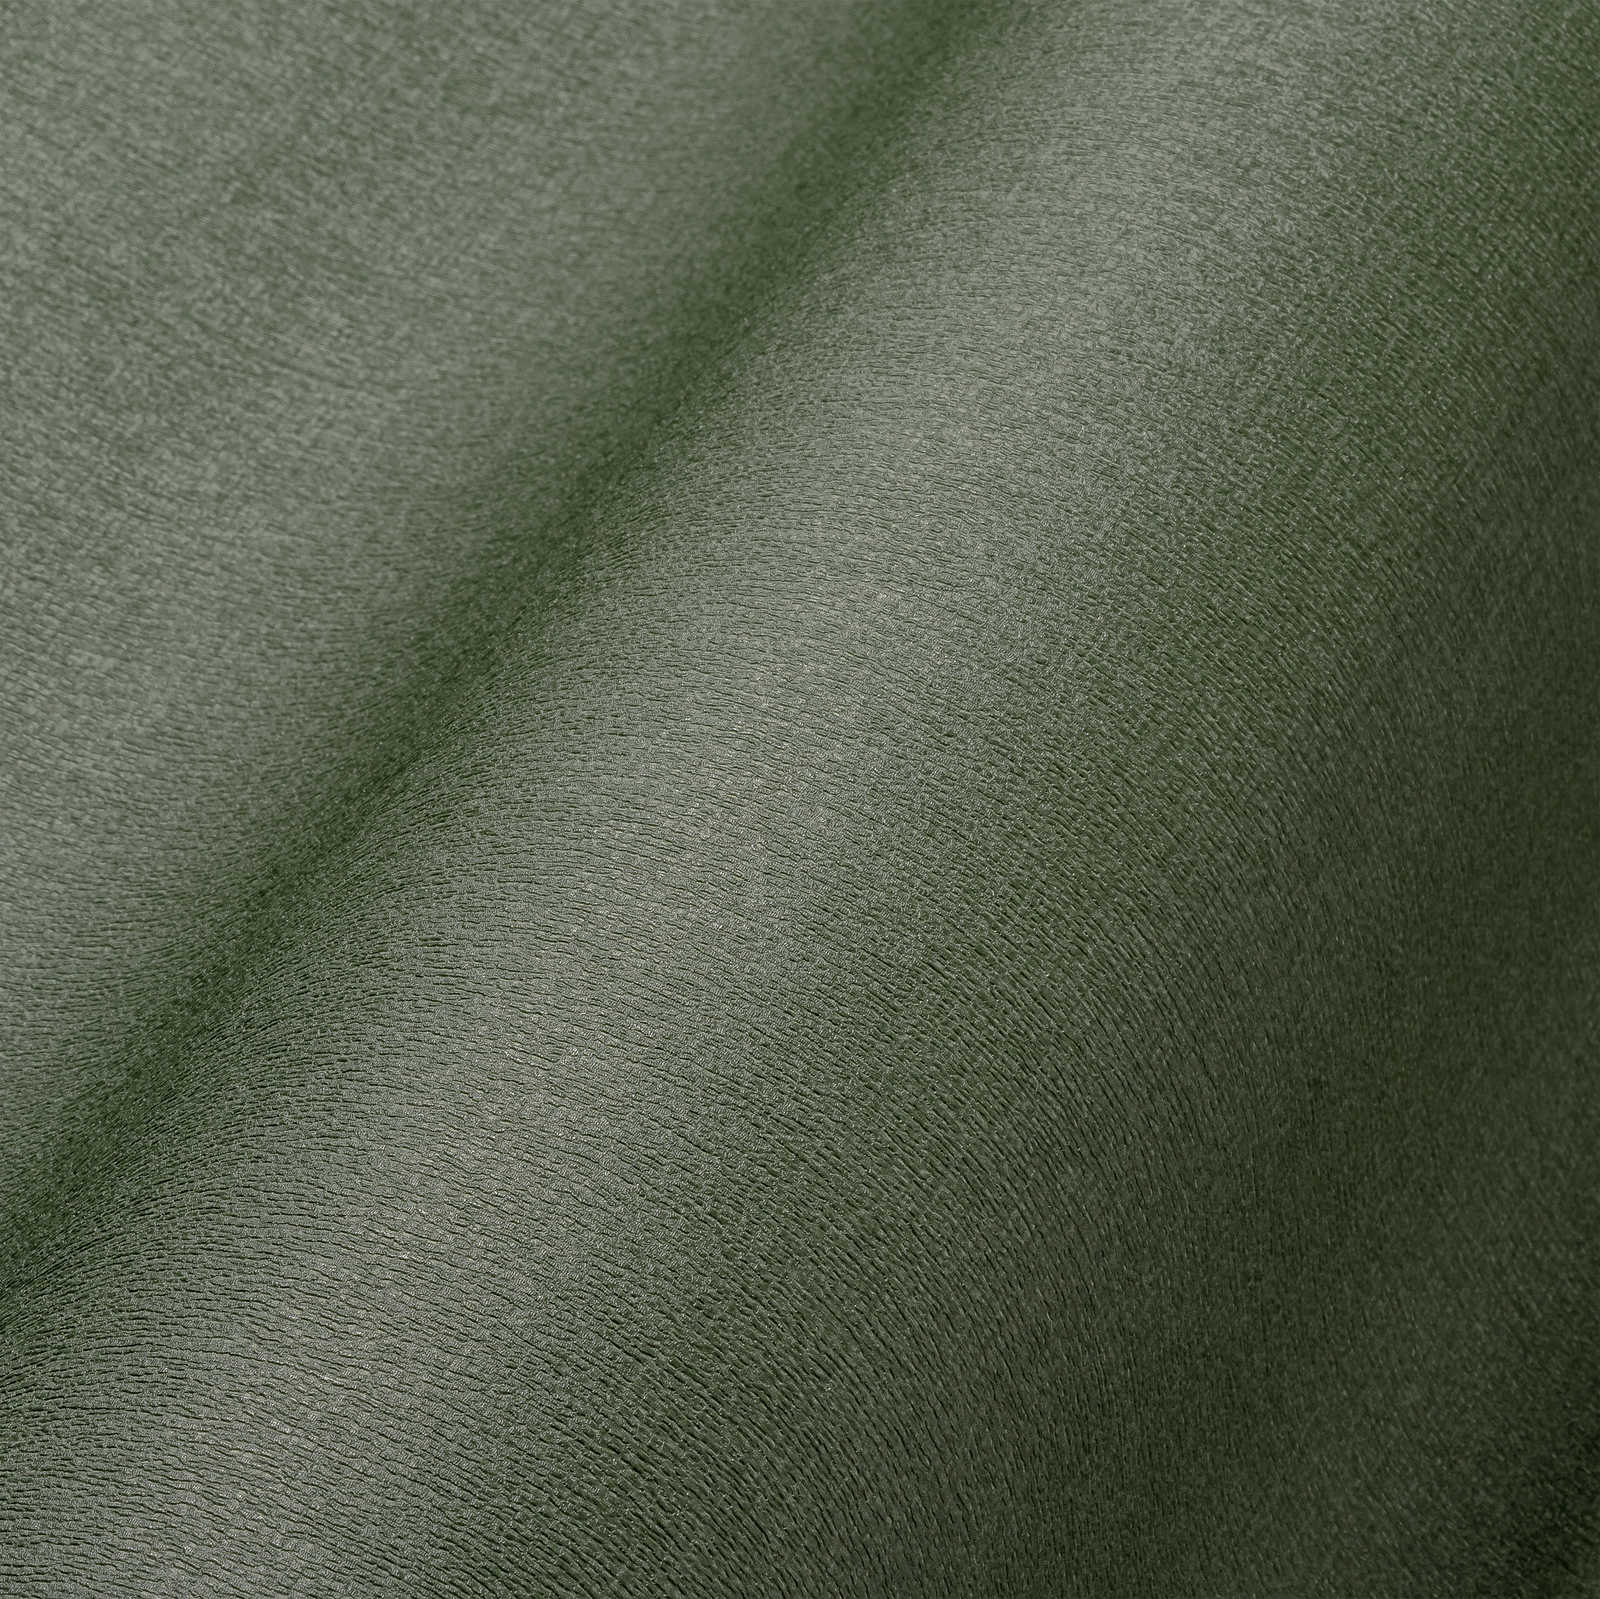             Einfarbige Vliestapete in auffälligen Farben – Grün
        